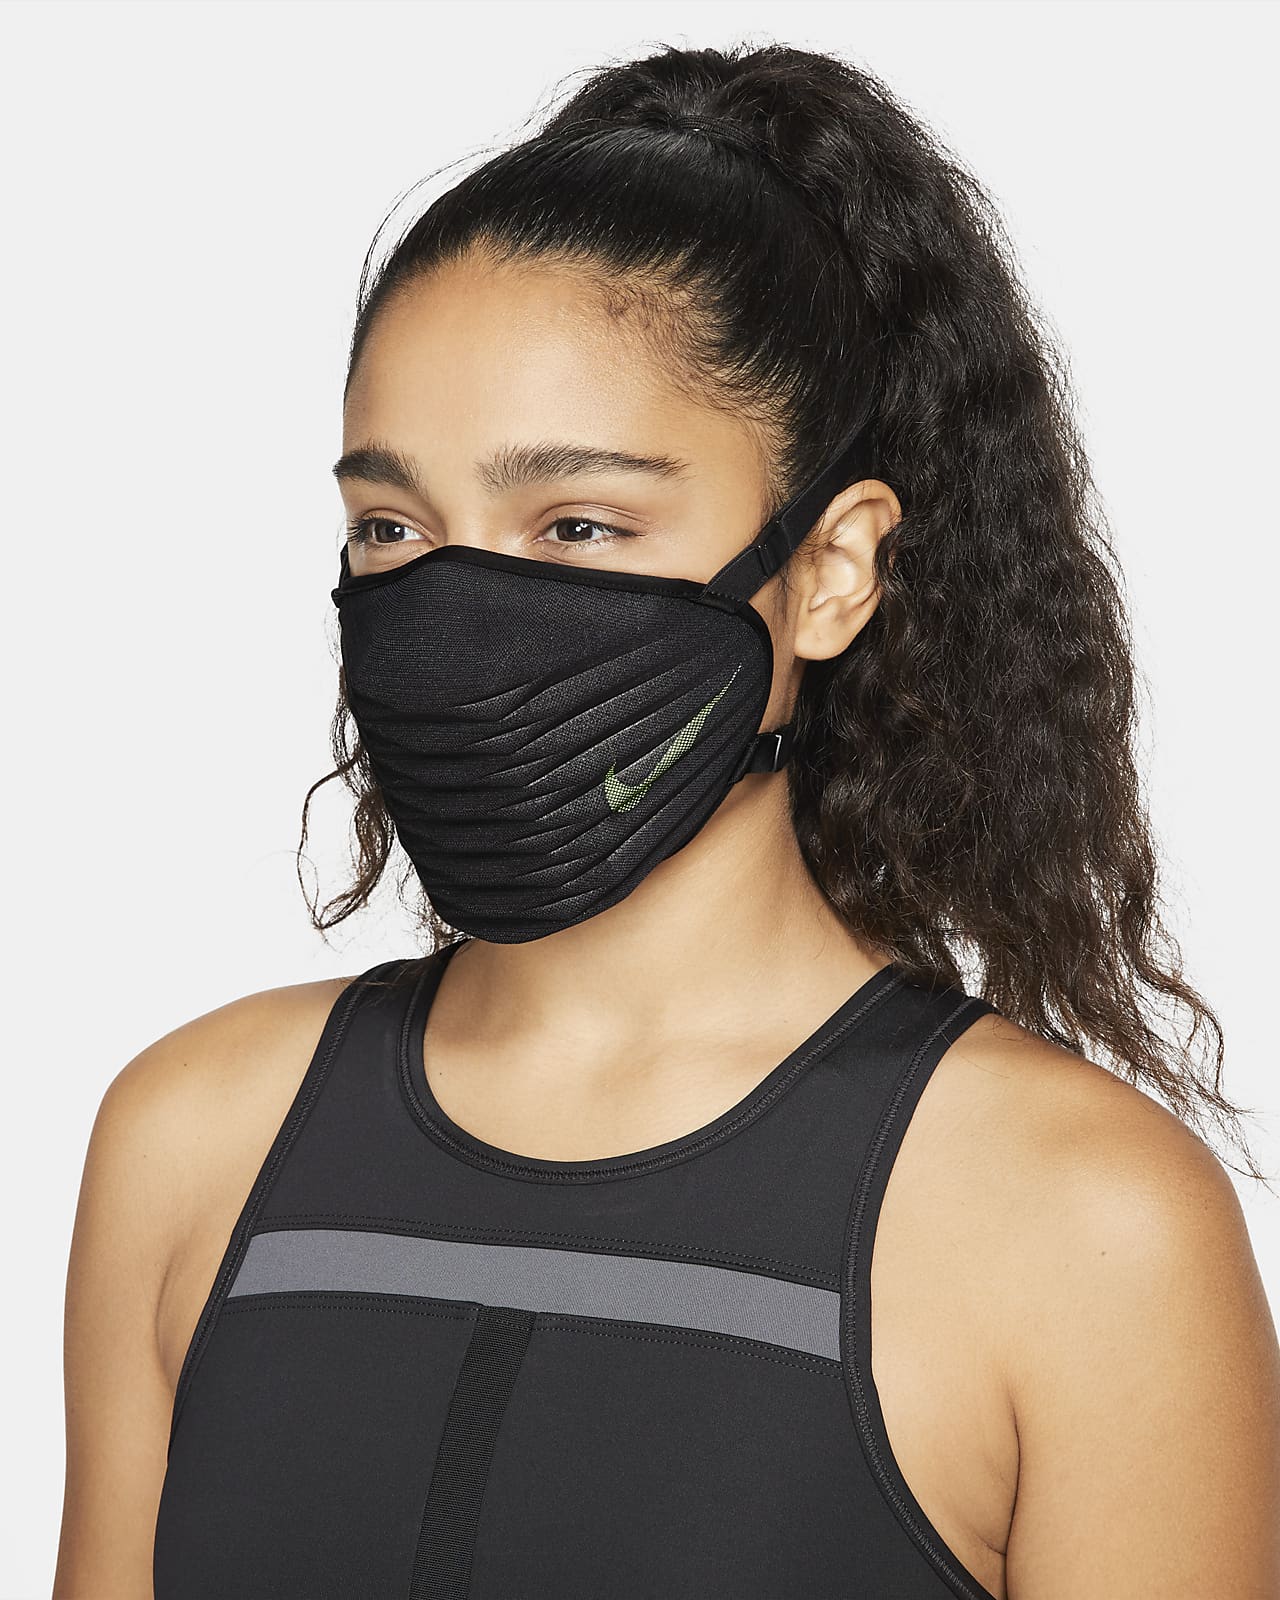 ستائر ايكيا رول السعودية Nike Venturer Performance Face Mask ستائر ايكيا رول السعودية